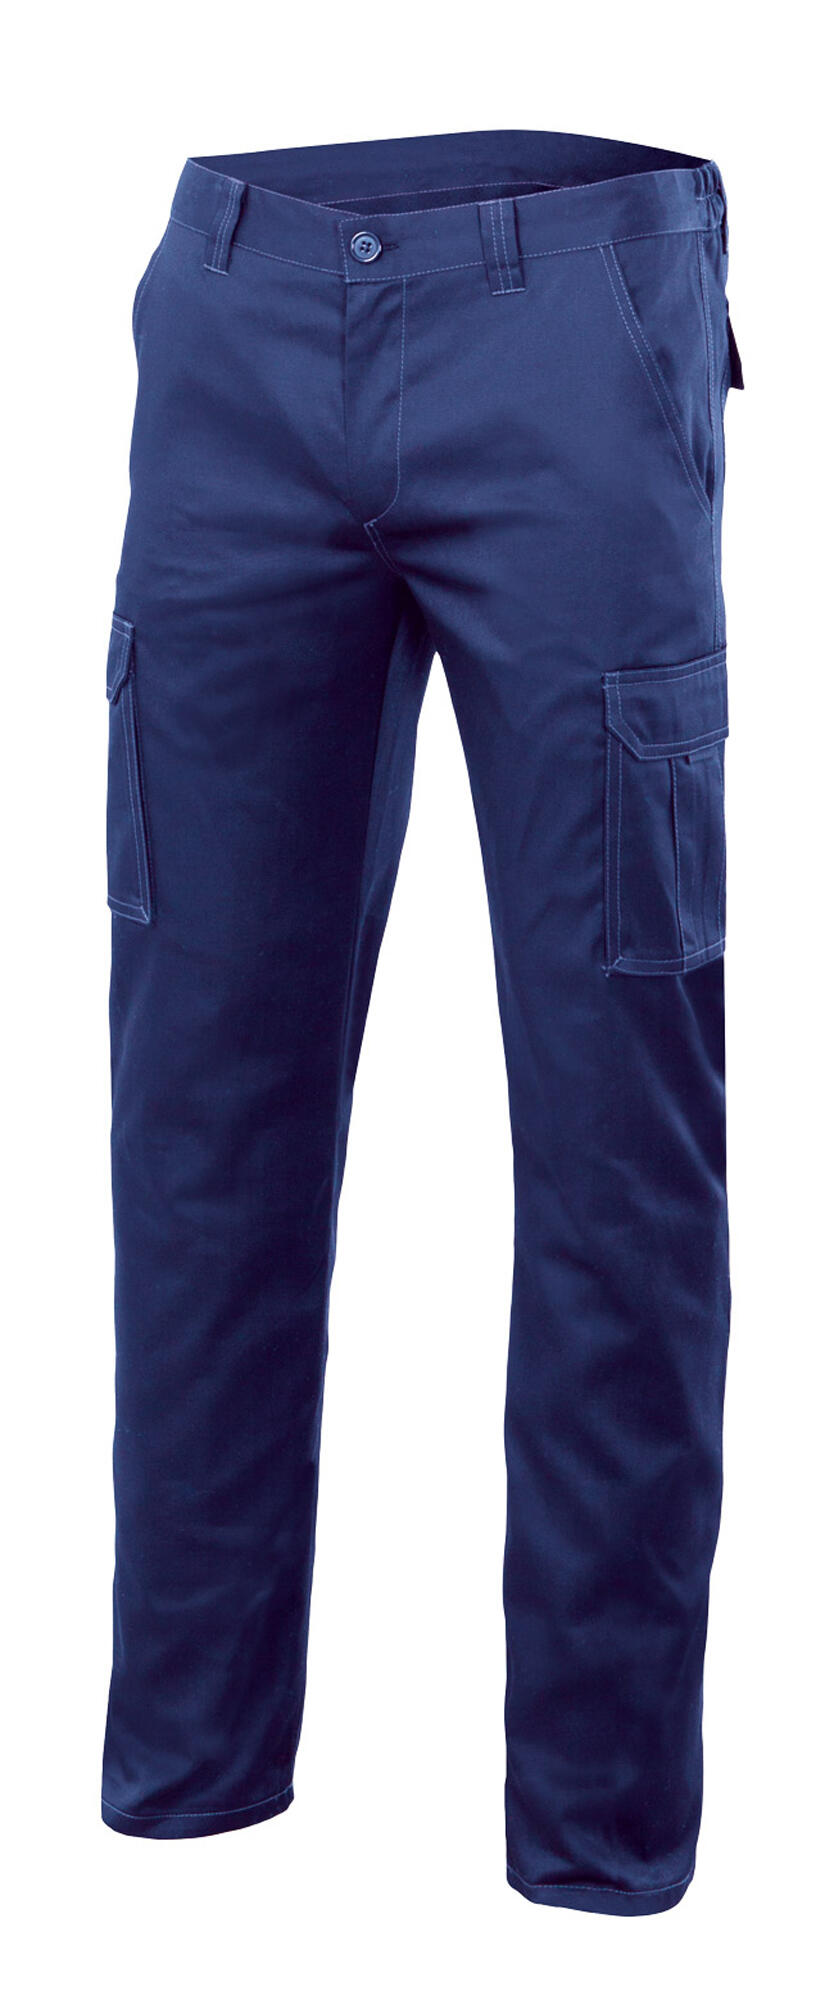 Pantalon de trabajo multibolsillo stretch azulina t36